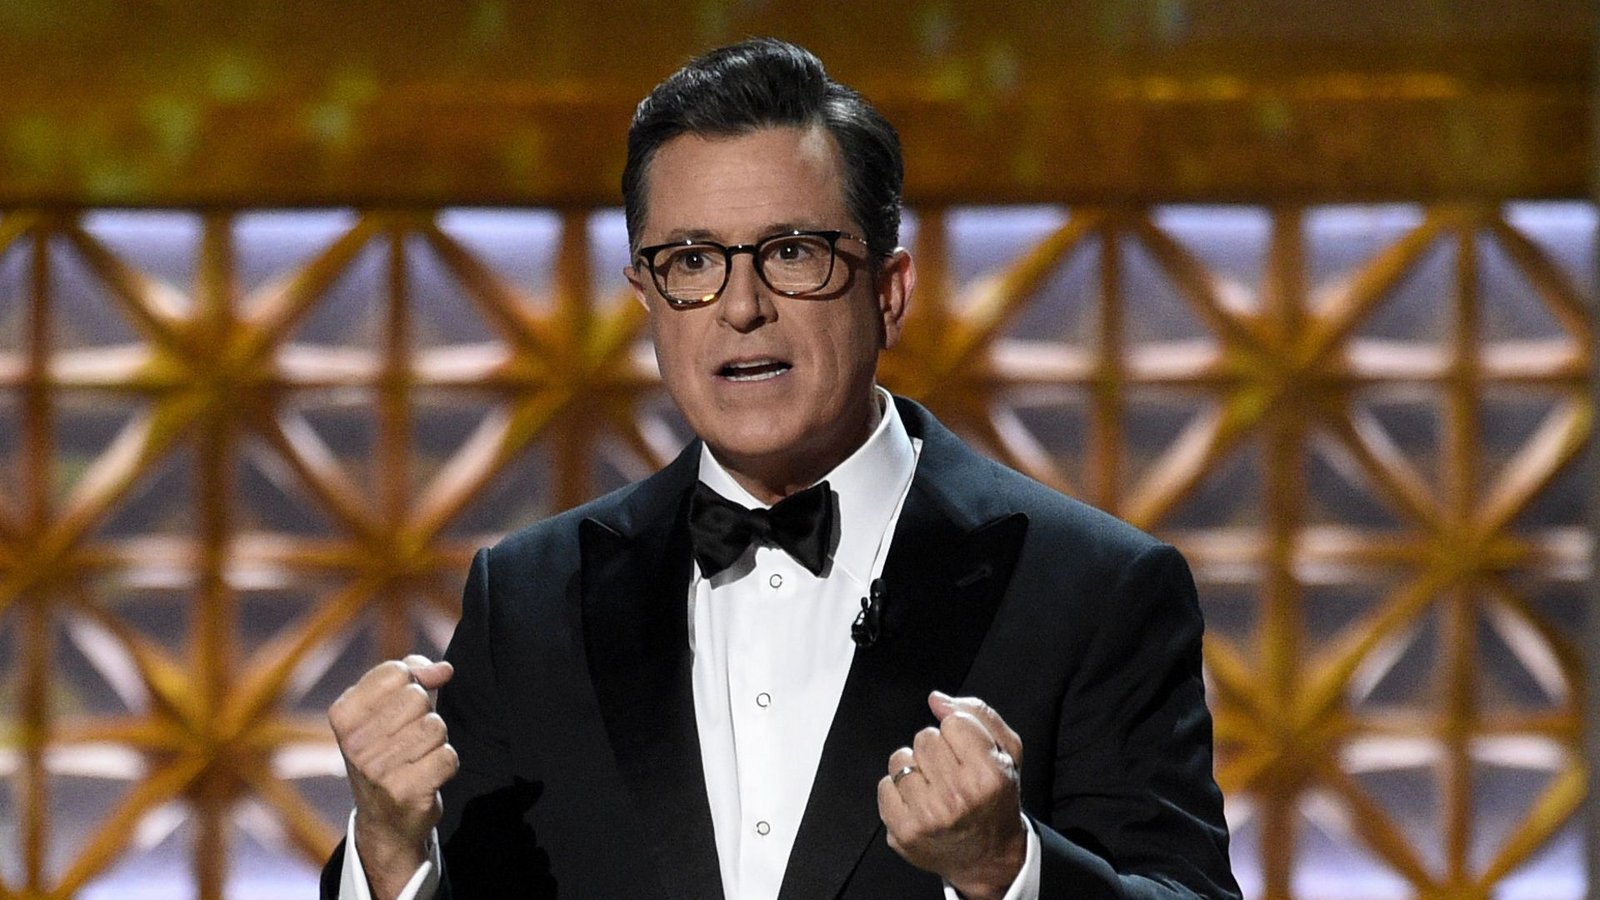 Stephen Colbert bereut, Witze über Prinzessin Kate gemacht zu haben. (Archivbild)Foto: dpa/Chris Pizzello